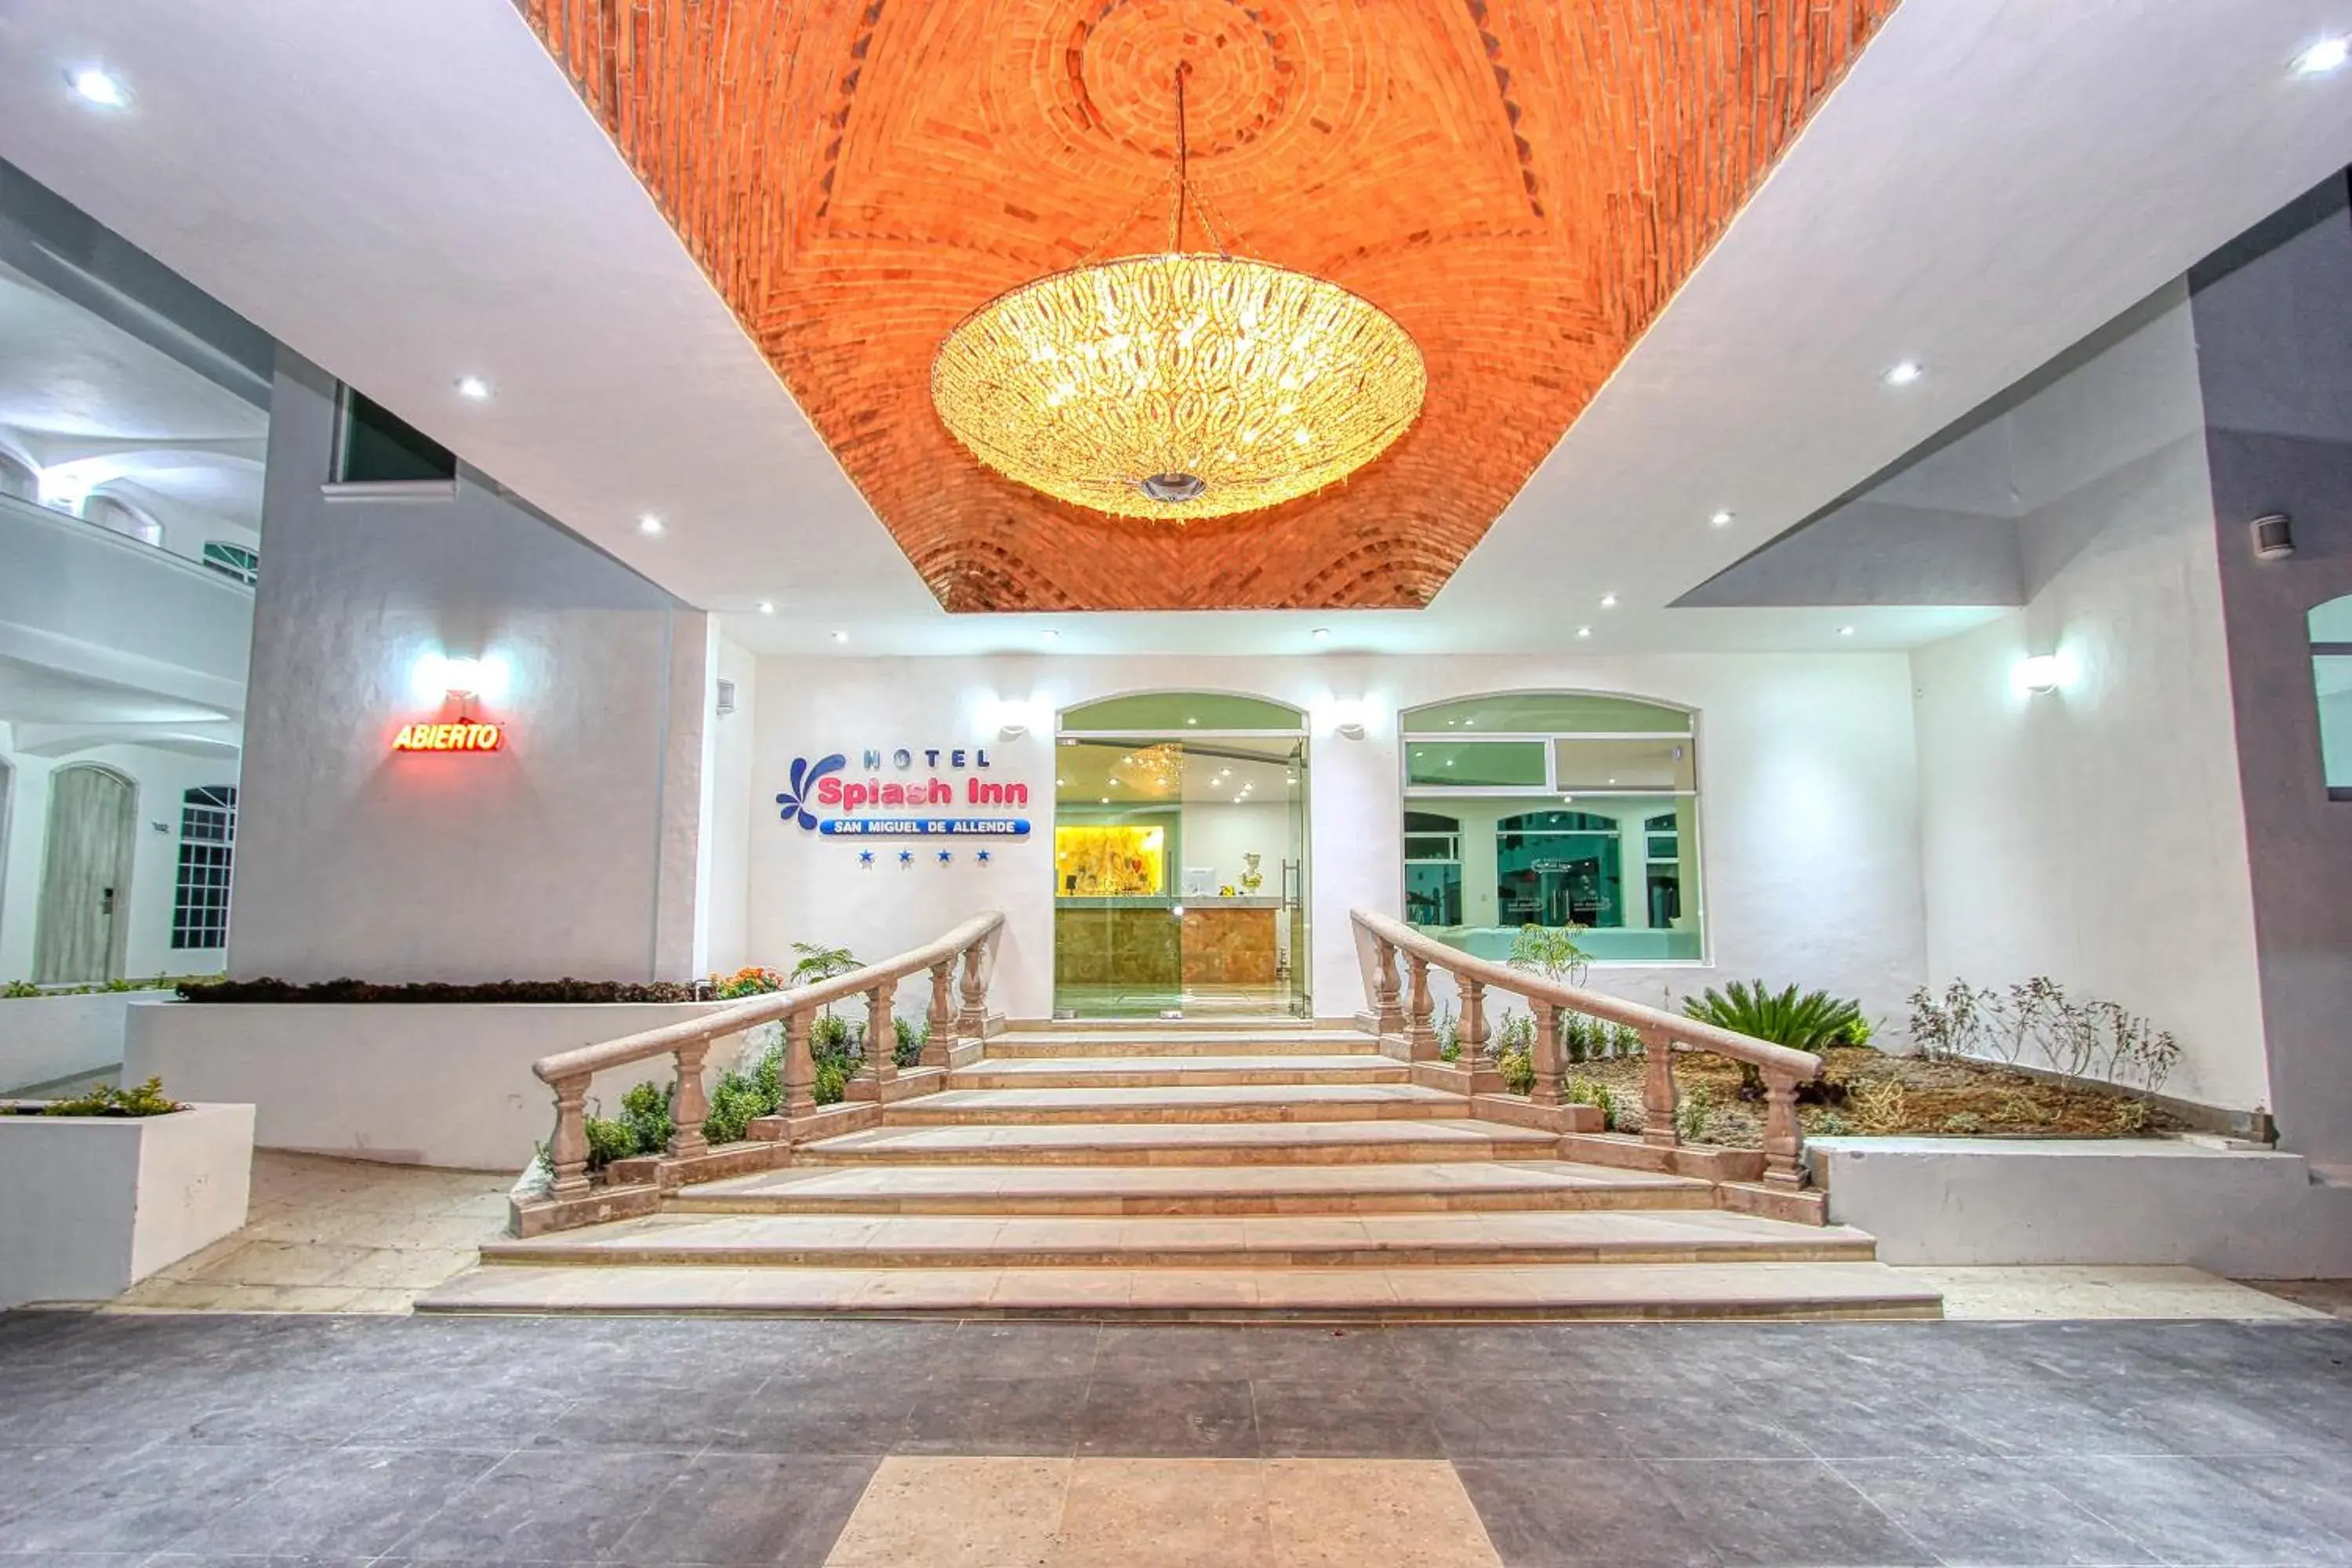 Lobby or reception in HOTEL SPLASH INN